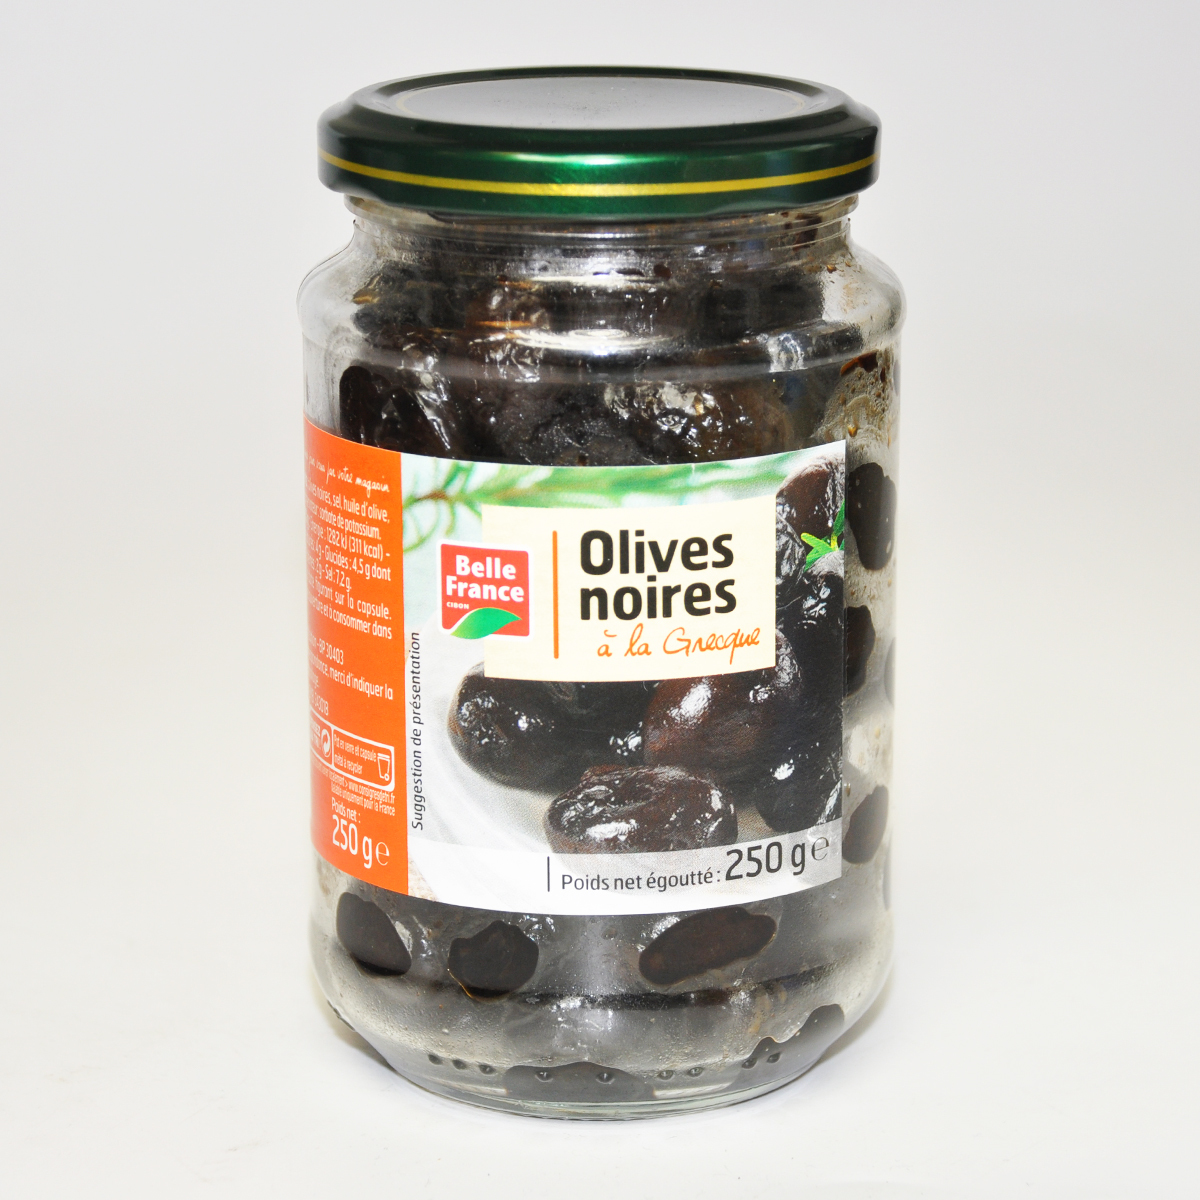 Оливки черные натуральные по греческому рецепту Belle France 250 г